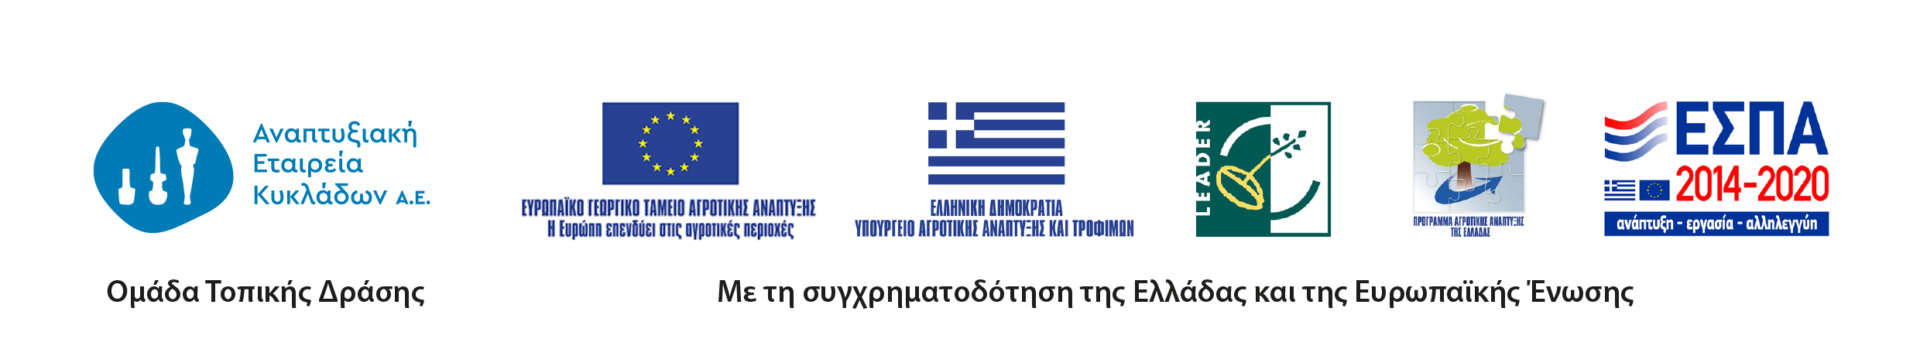 Σημαίες-Λογότυπα-CLLD-LEADER-Ελληνικά-Διάταξη-Σε-Μία-Σειρά